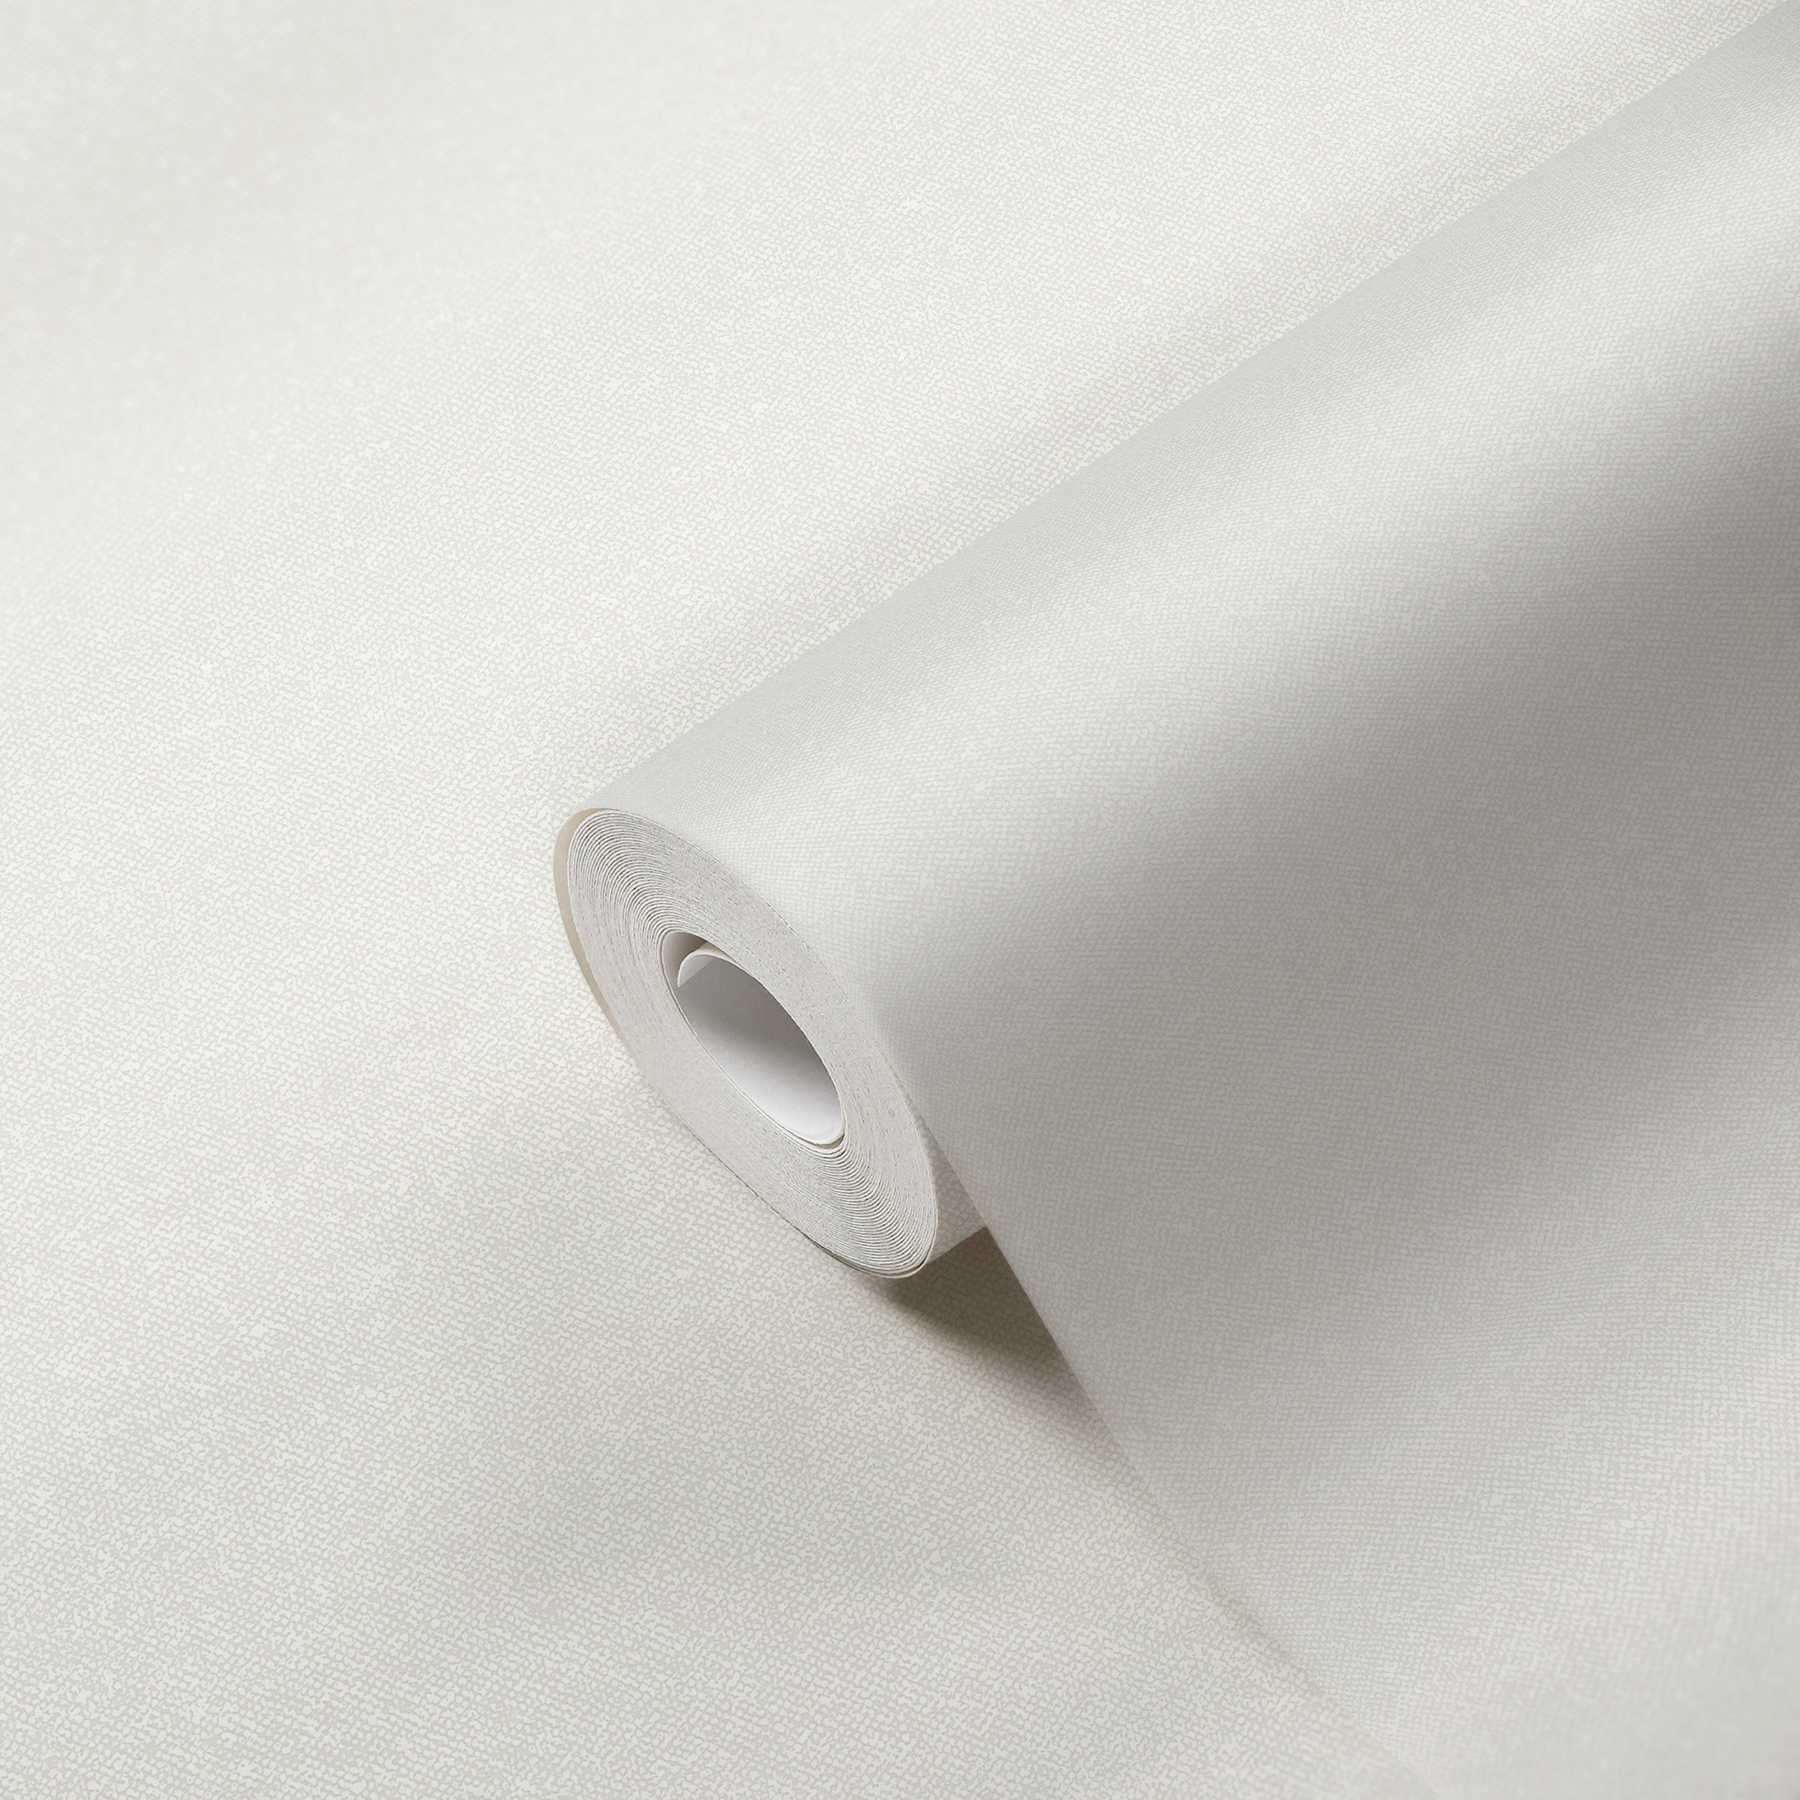             Textielachtig behangpapier effen - wit, crème
        